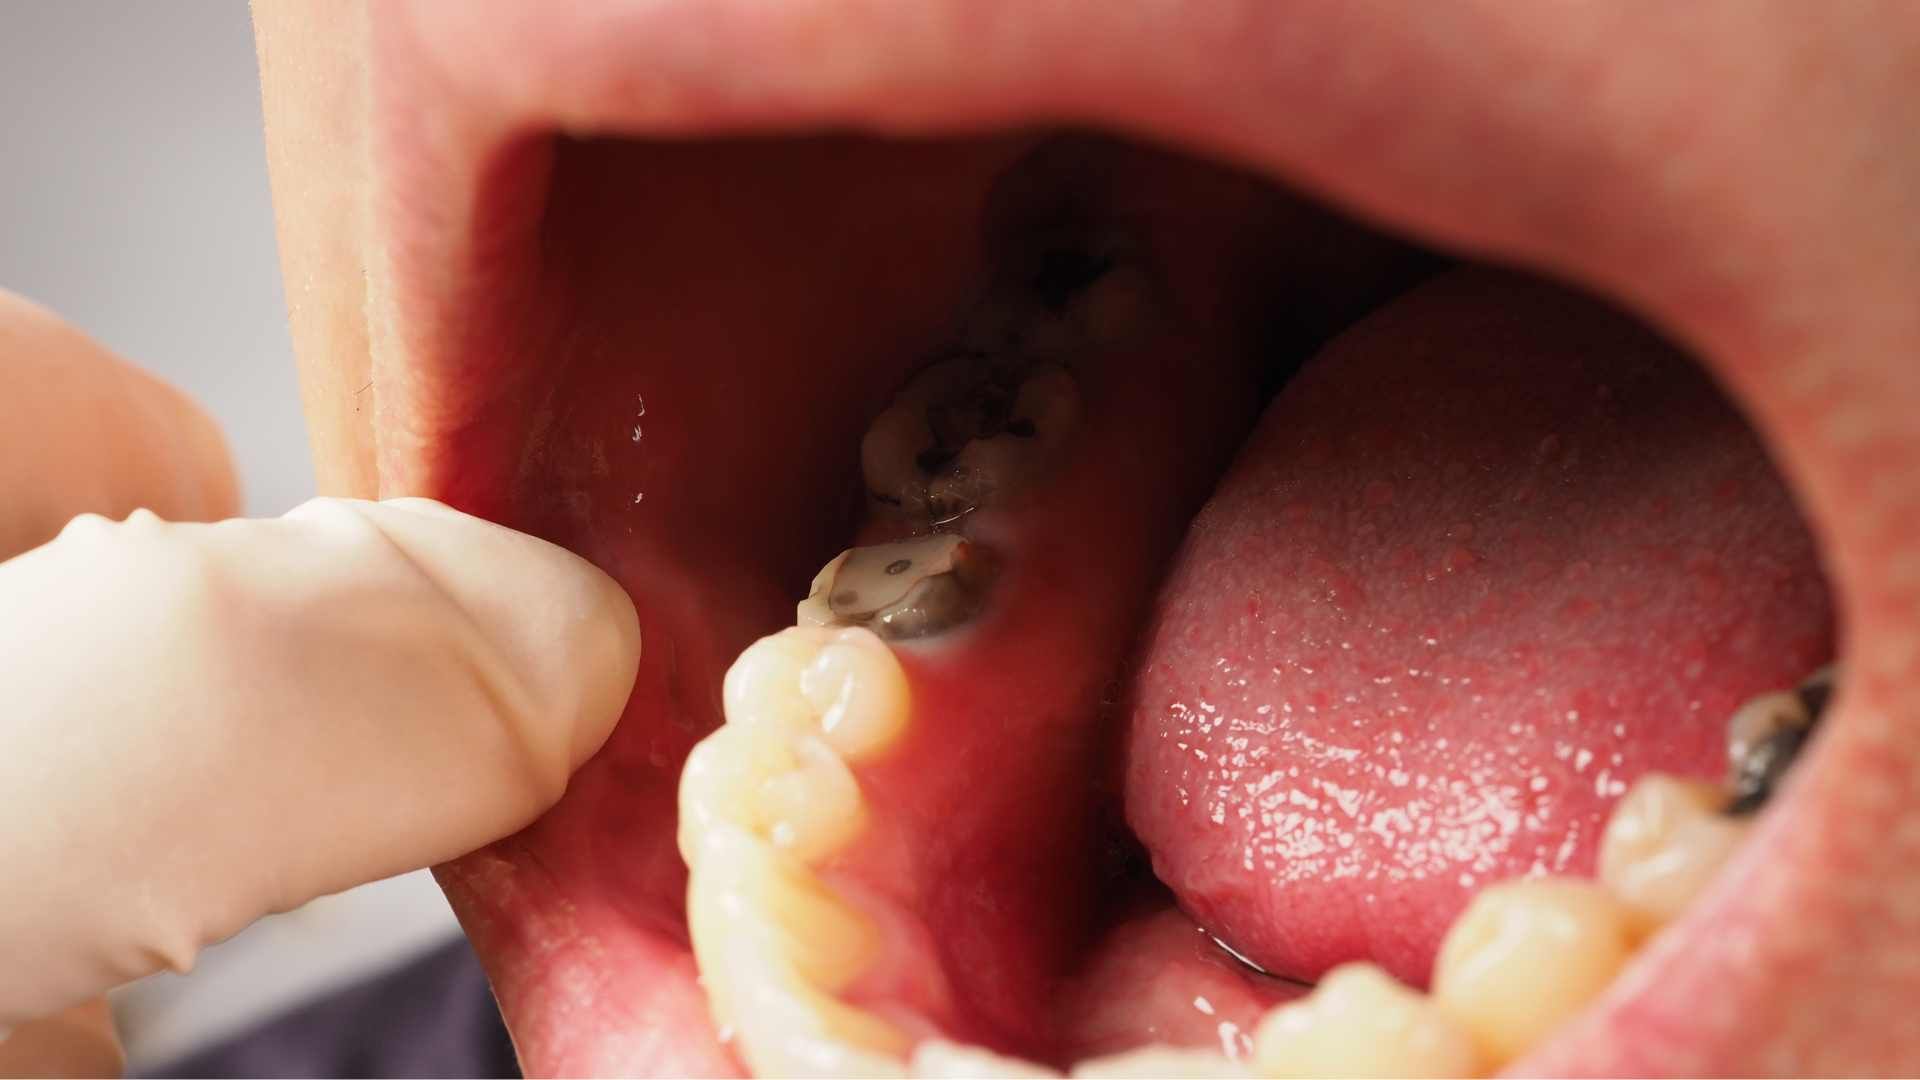 بیلدآپ (بازسازی) دندان با آمالگام ایرانی دکتر علی ناصح اعلم در کرج 1